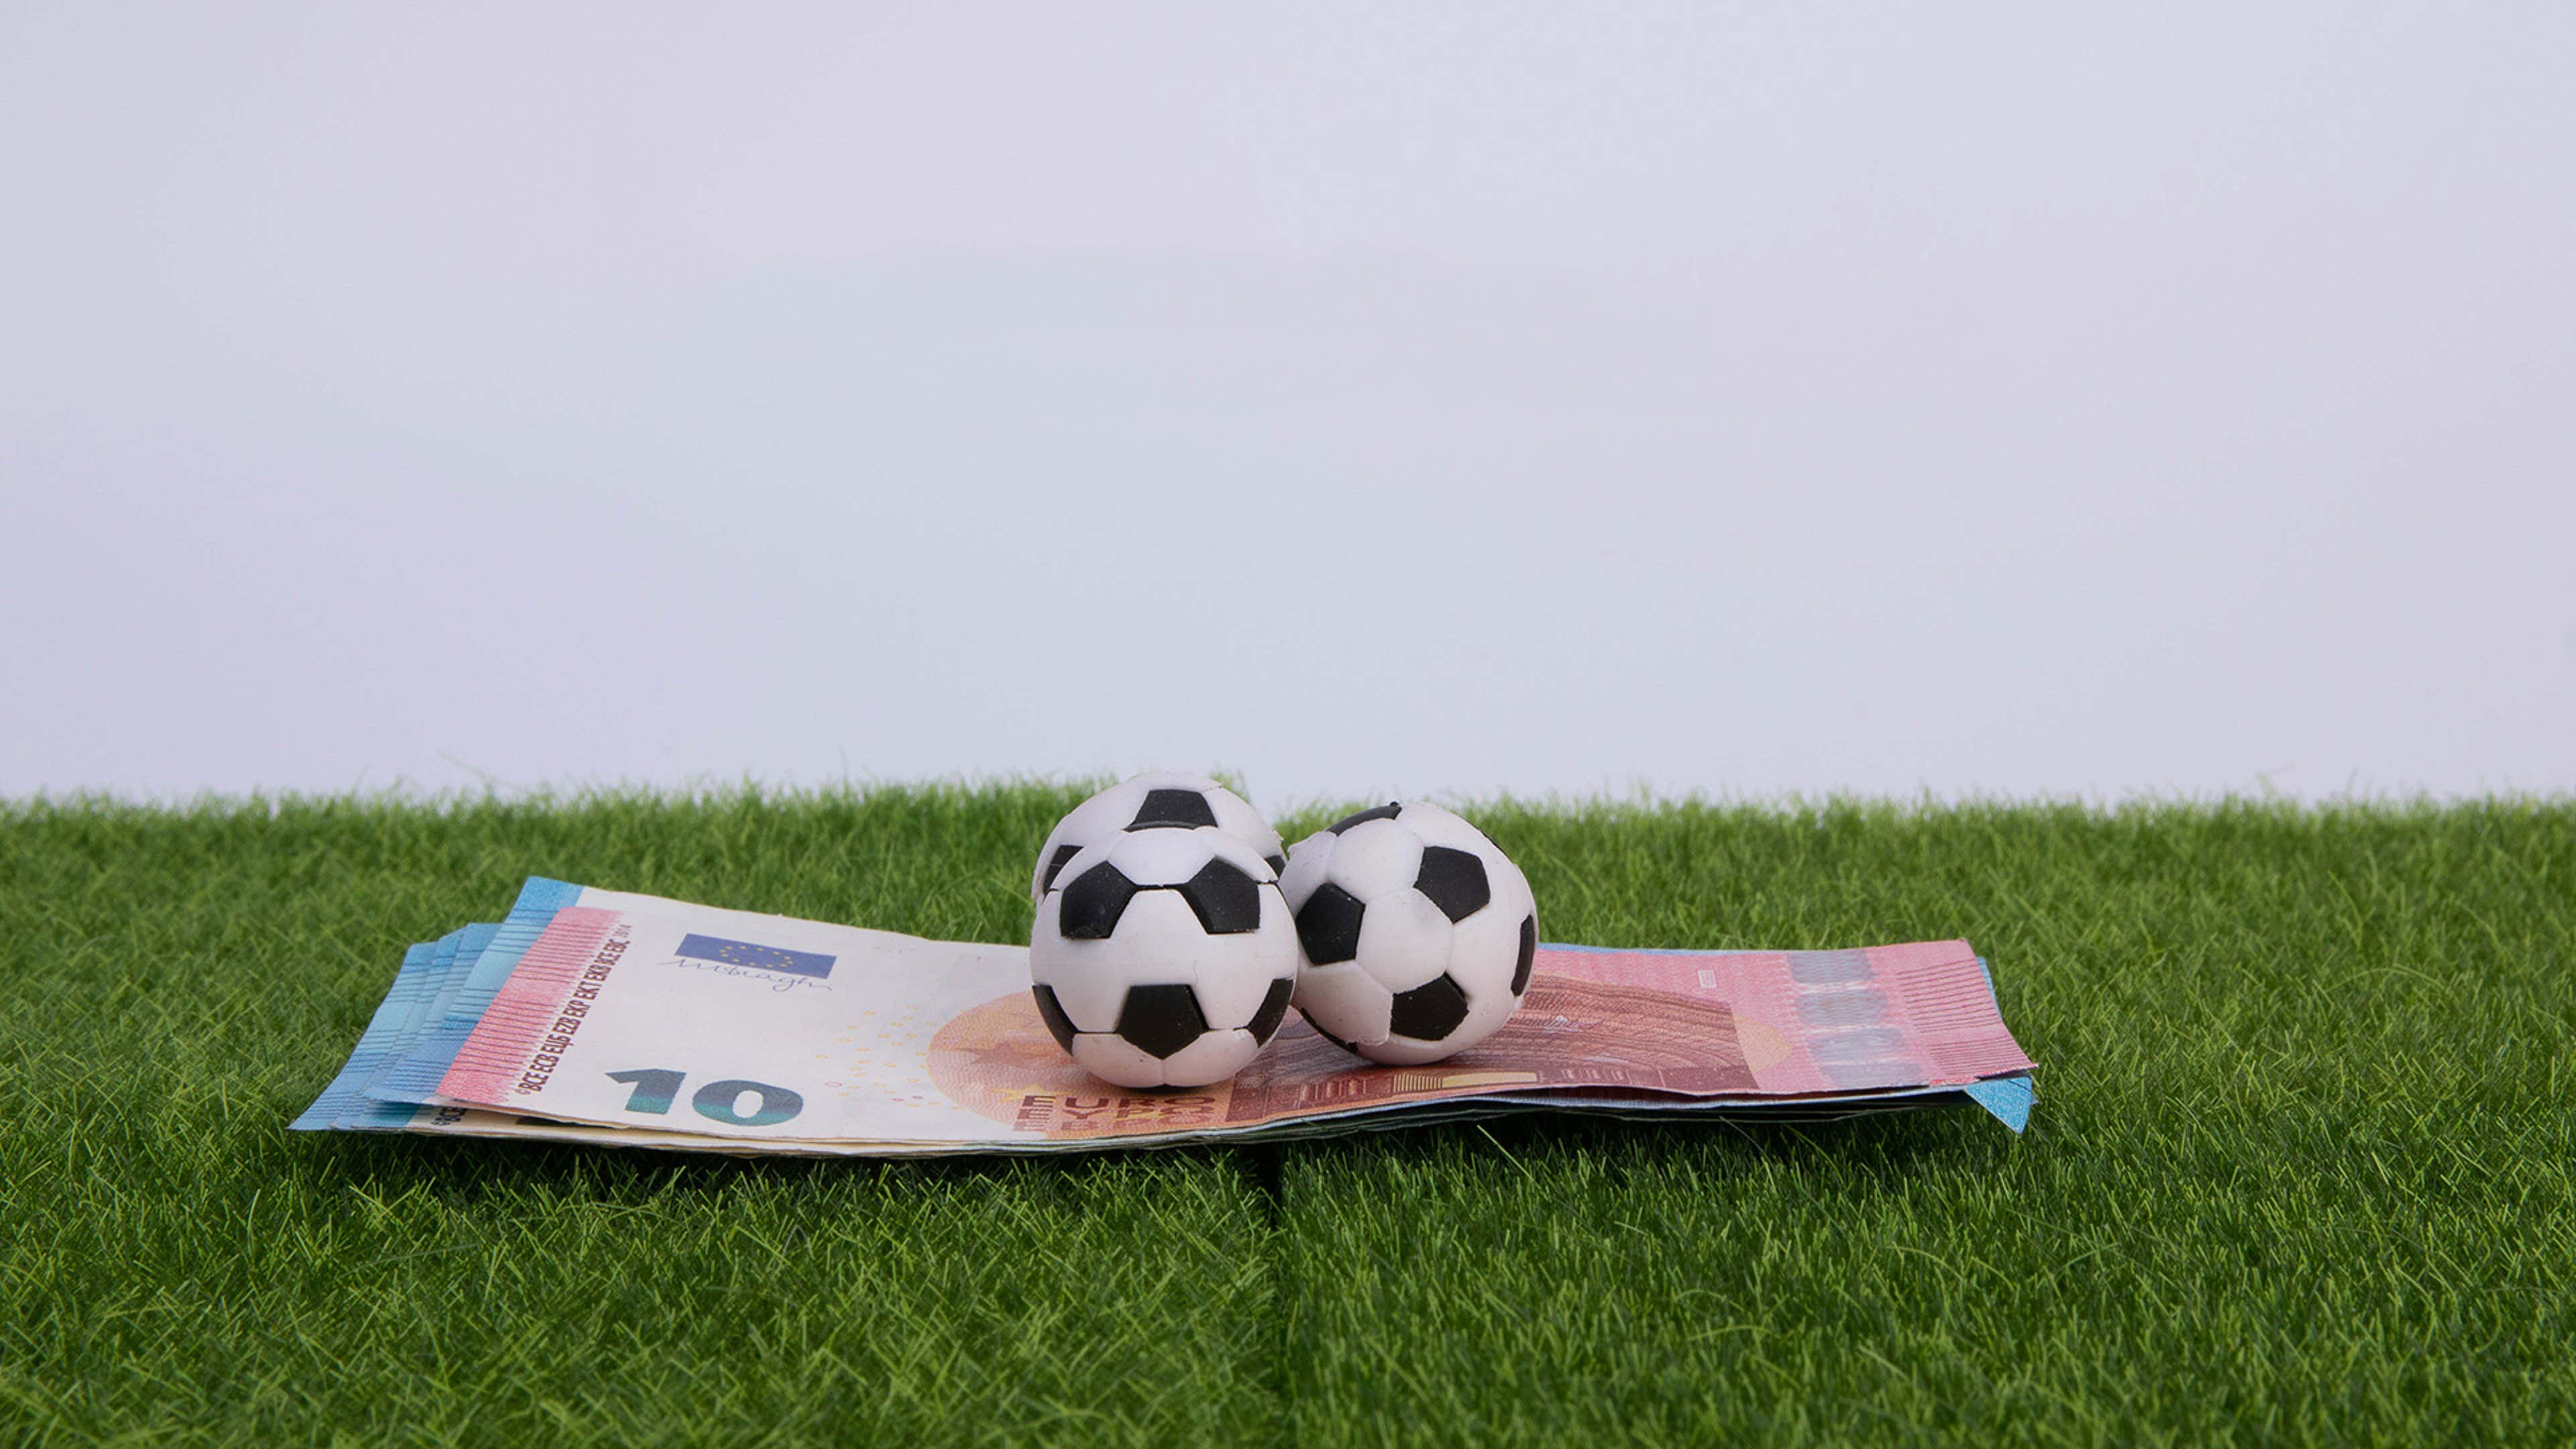 Como parar de perder em apostas esportivas e passar a ganhar dinheiro? -  Esportividade - Guia de esporte de São Paulo e região